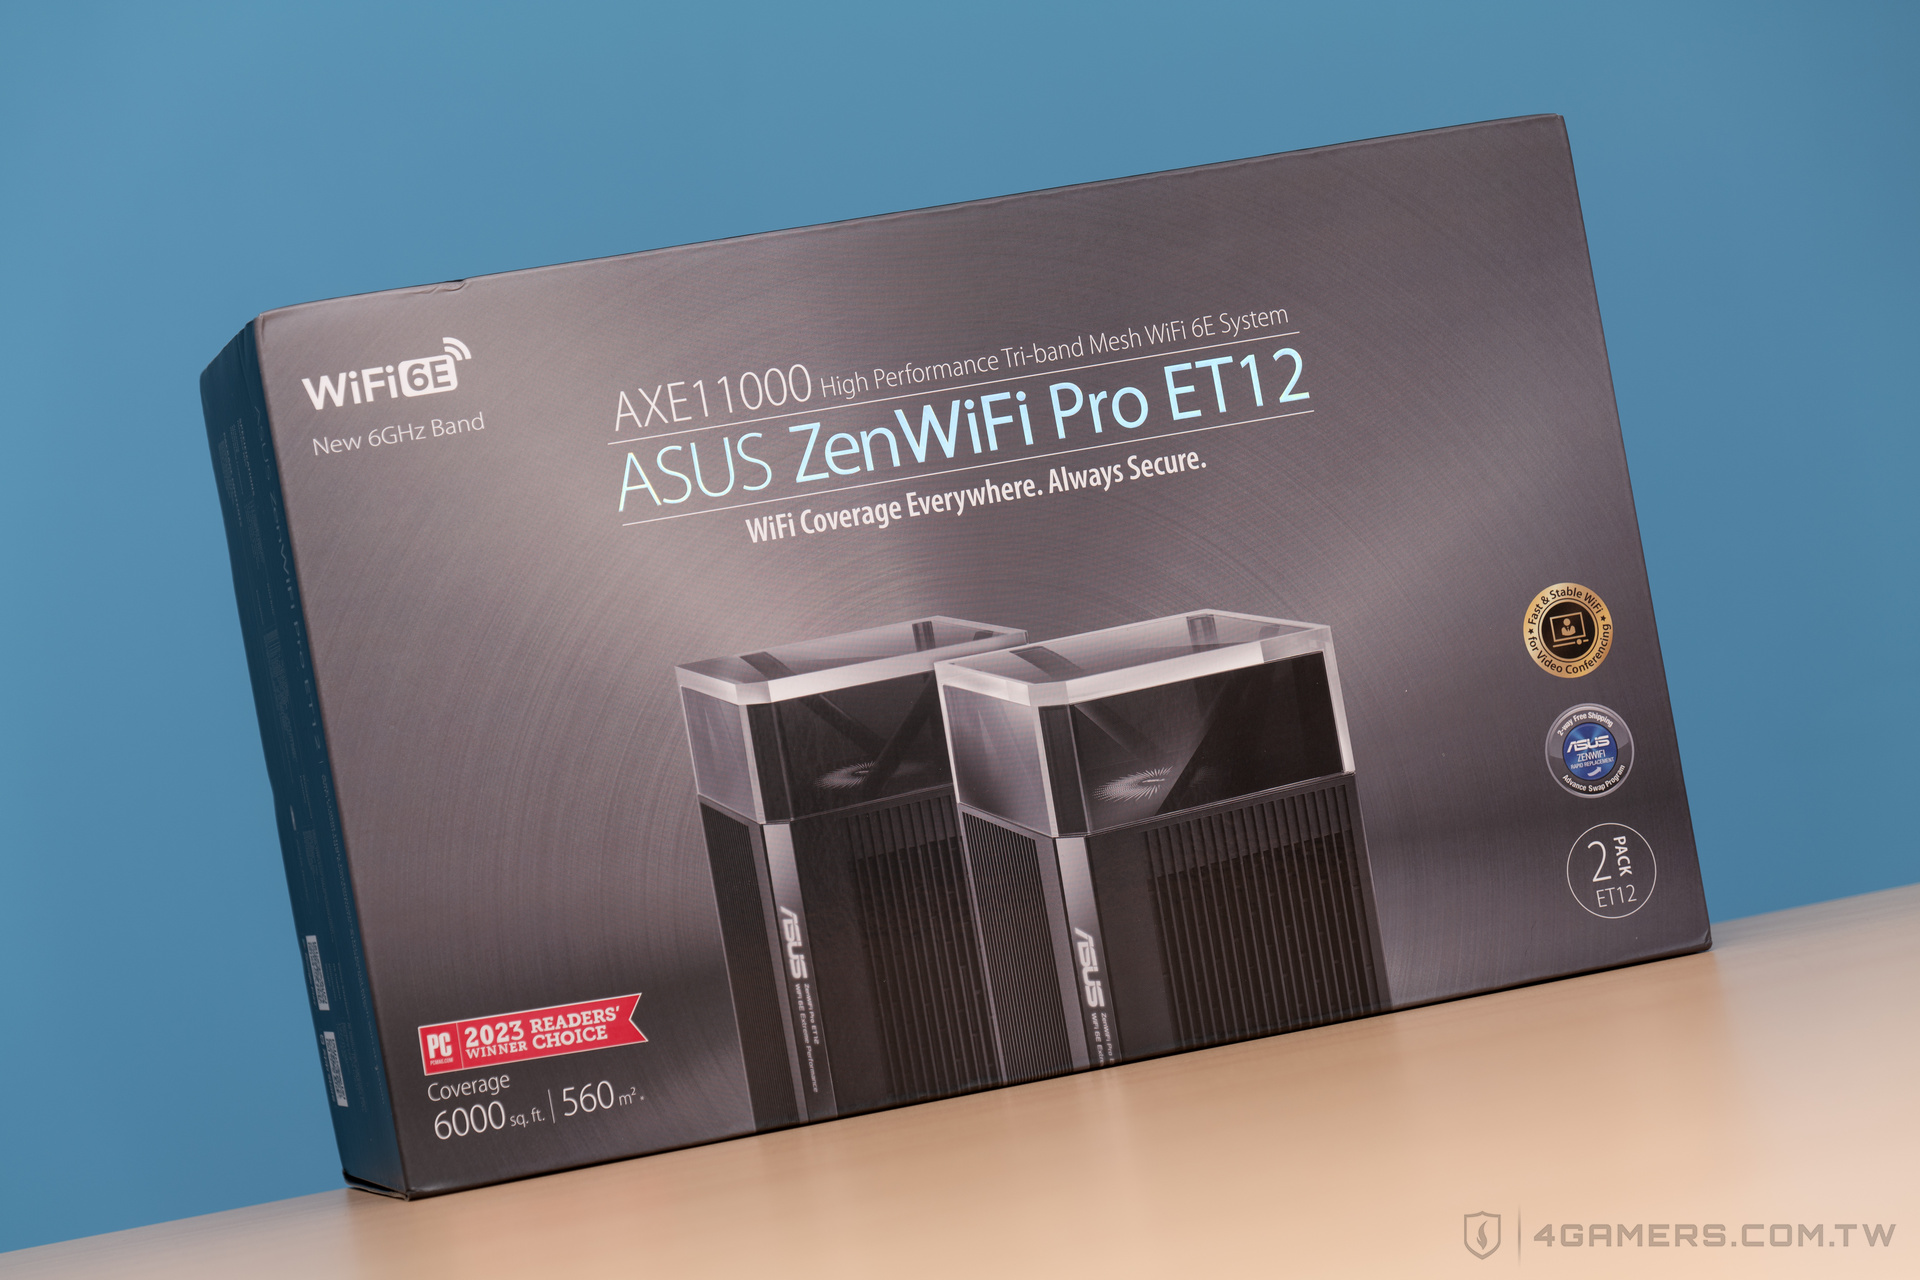 ASUS ZenWiFi Pro ET12